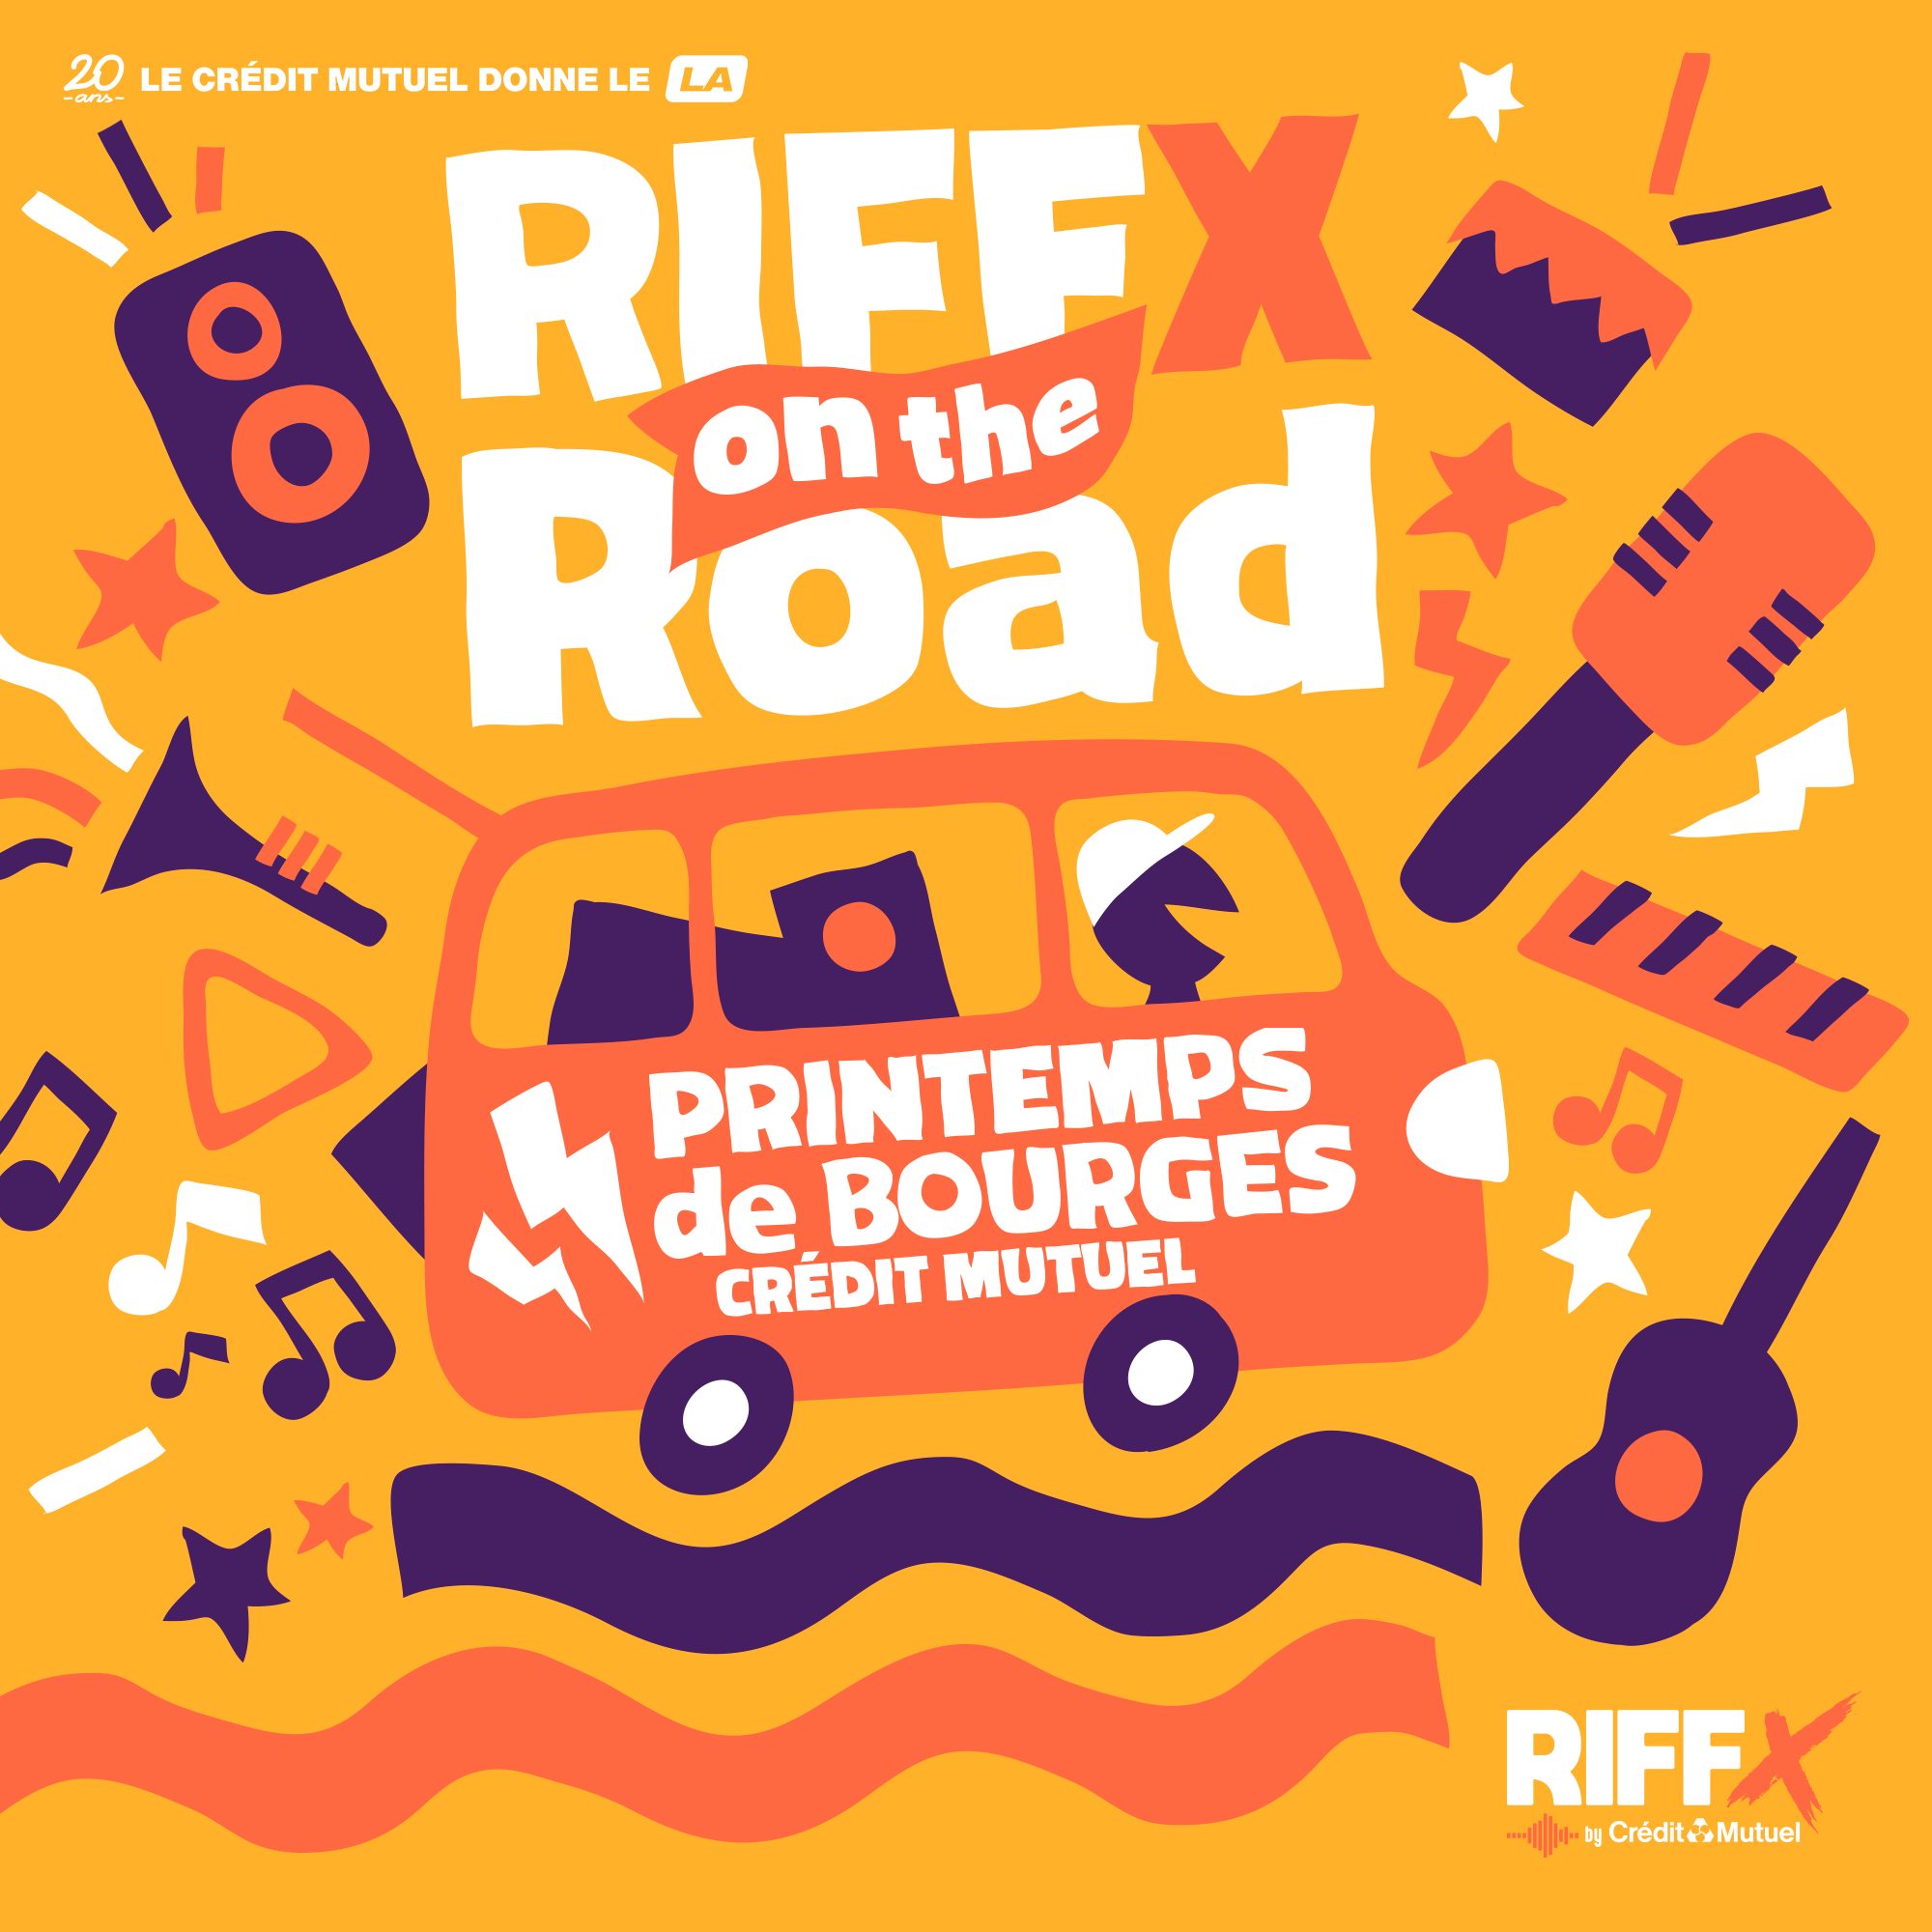 RIFFX on the Road : Épisode 1 au Printemps de Bourges Crédit Mutuel